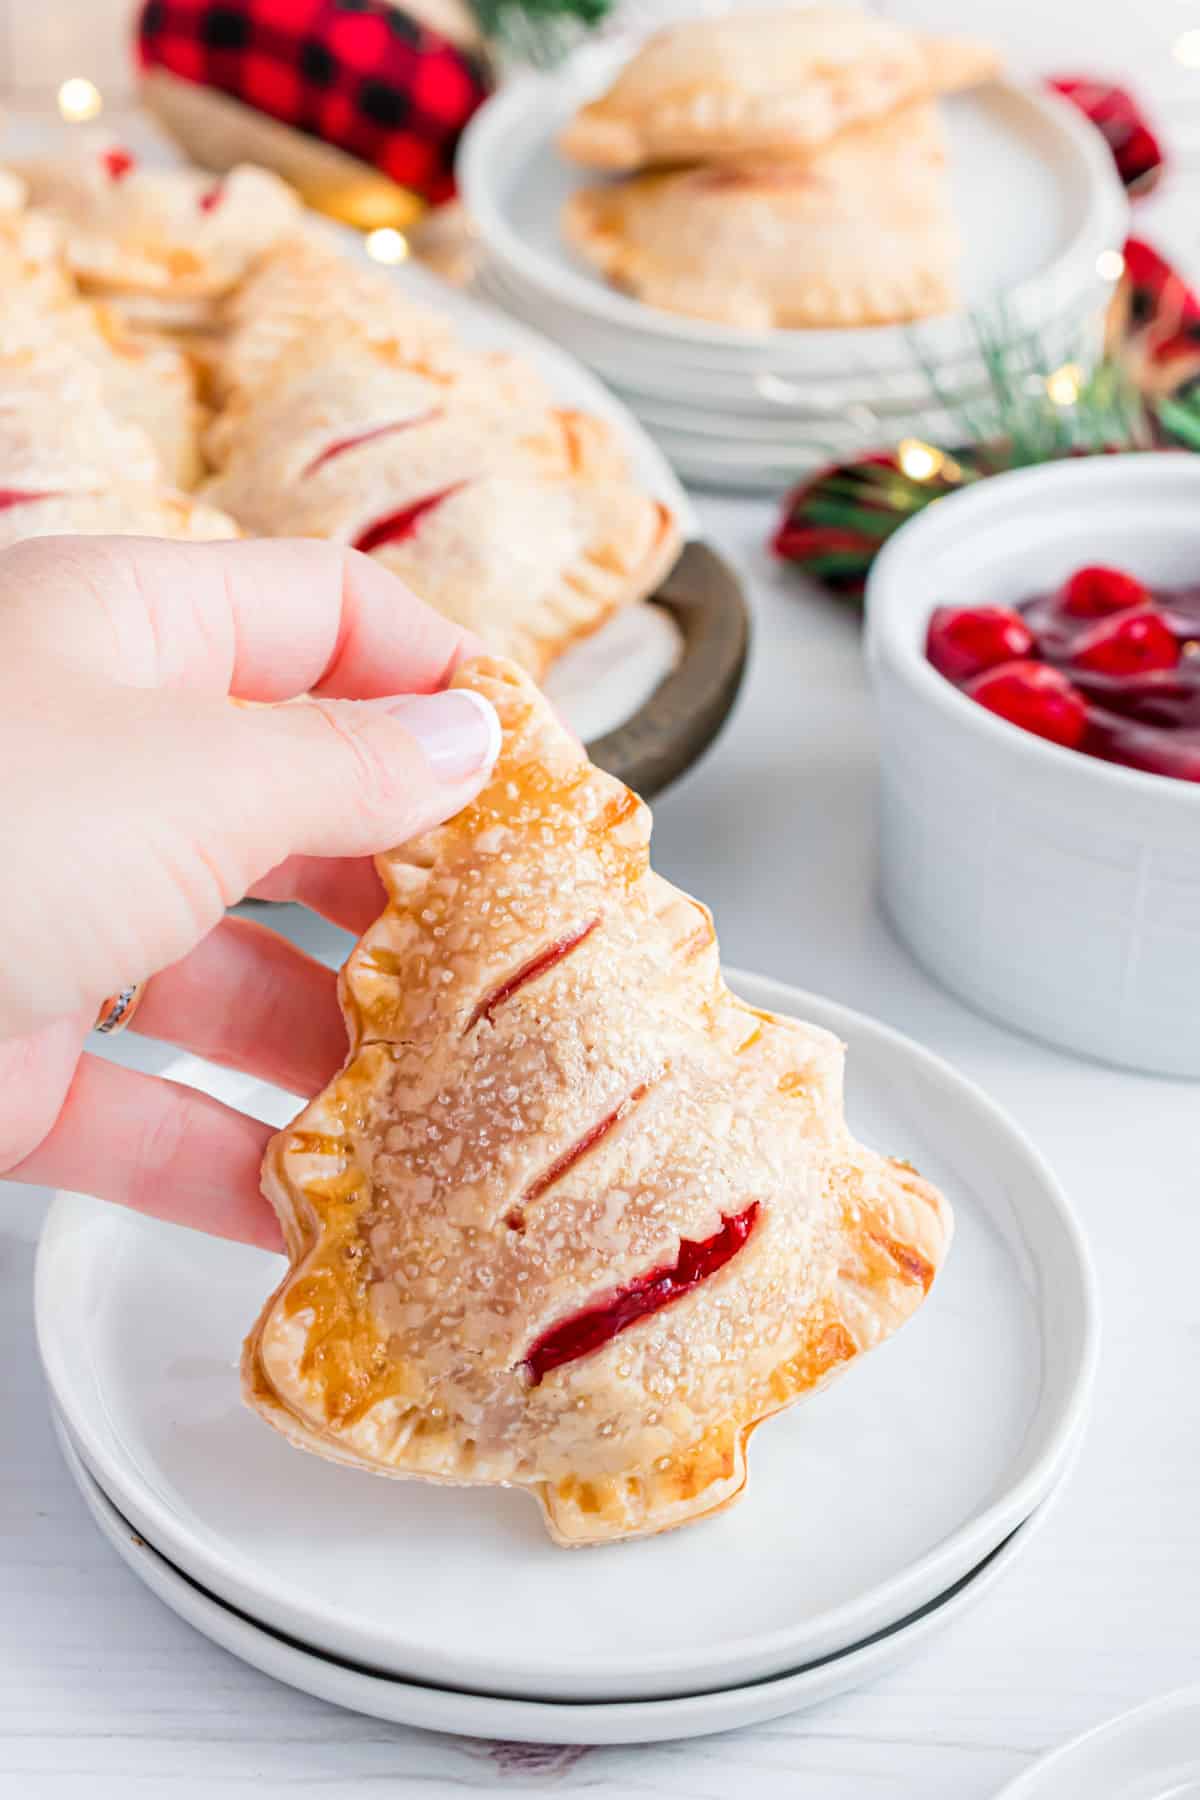 Cherry hand pie shaped like a Christmas tree.